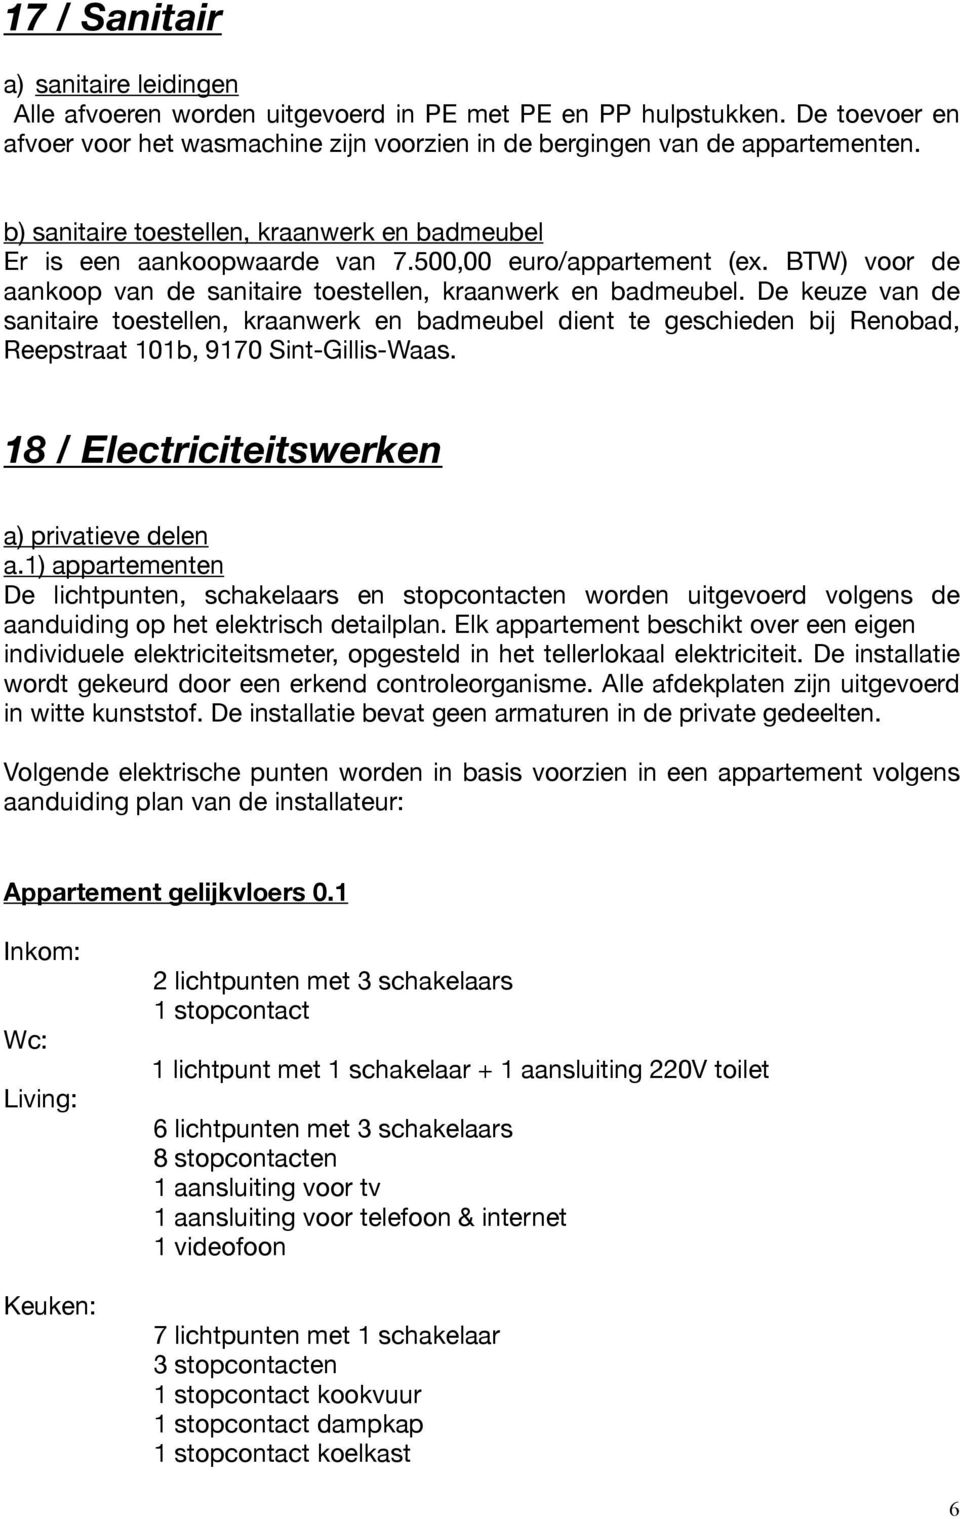 De keuze van de sanitaire toestellen, kraanwerk en badmeubel dient te geschieden bij Renobad, Reepstraat 101b, 9170 Sint-Gillis-Waas. 18 / Electriciteitswerken a) privatieve delen a.